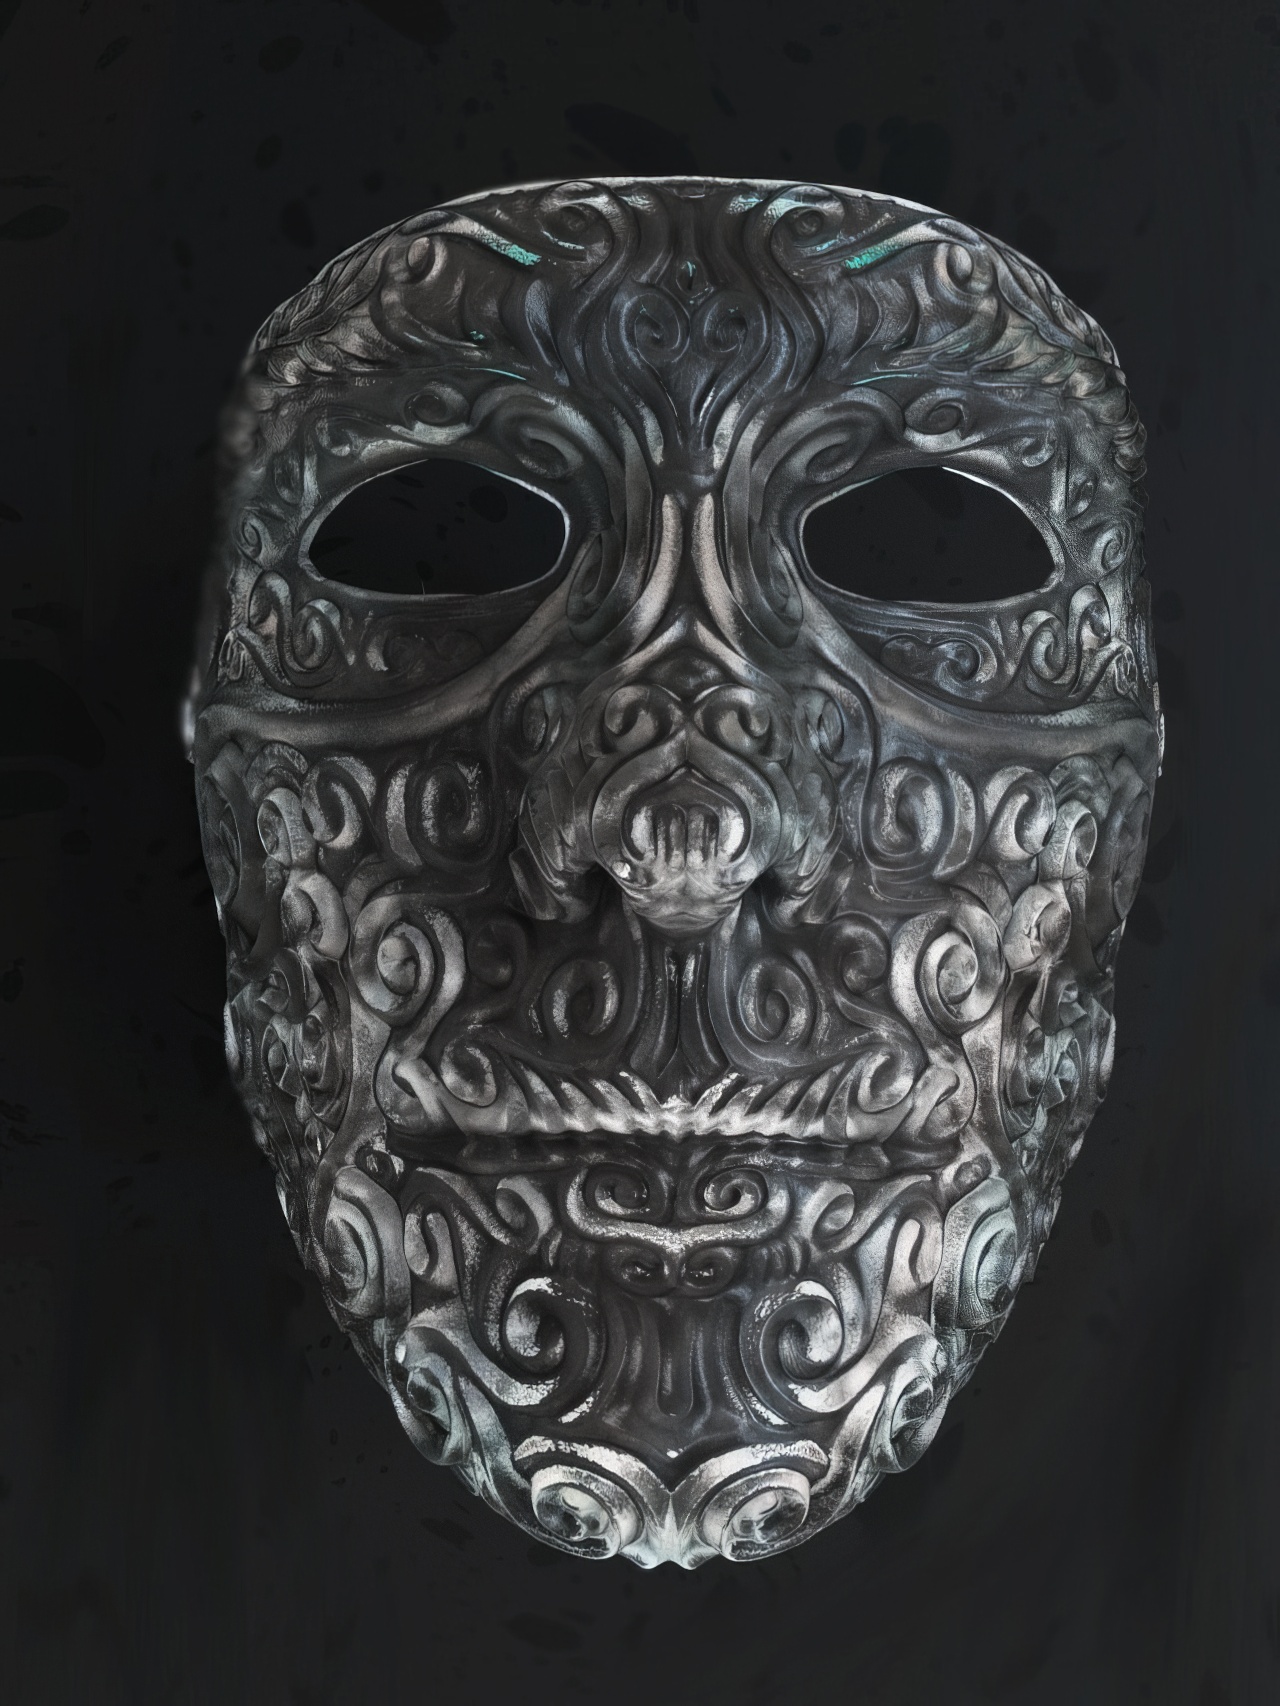 Decorative Filigree Masquerade Ball Mask by ArtisticMusician | Download ...